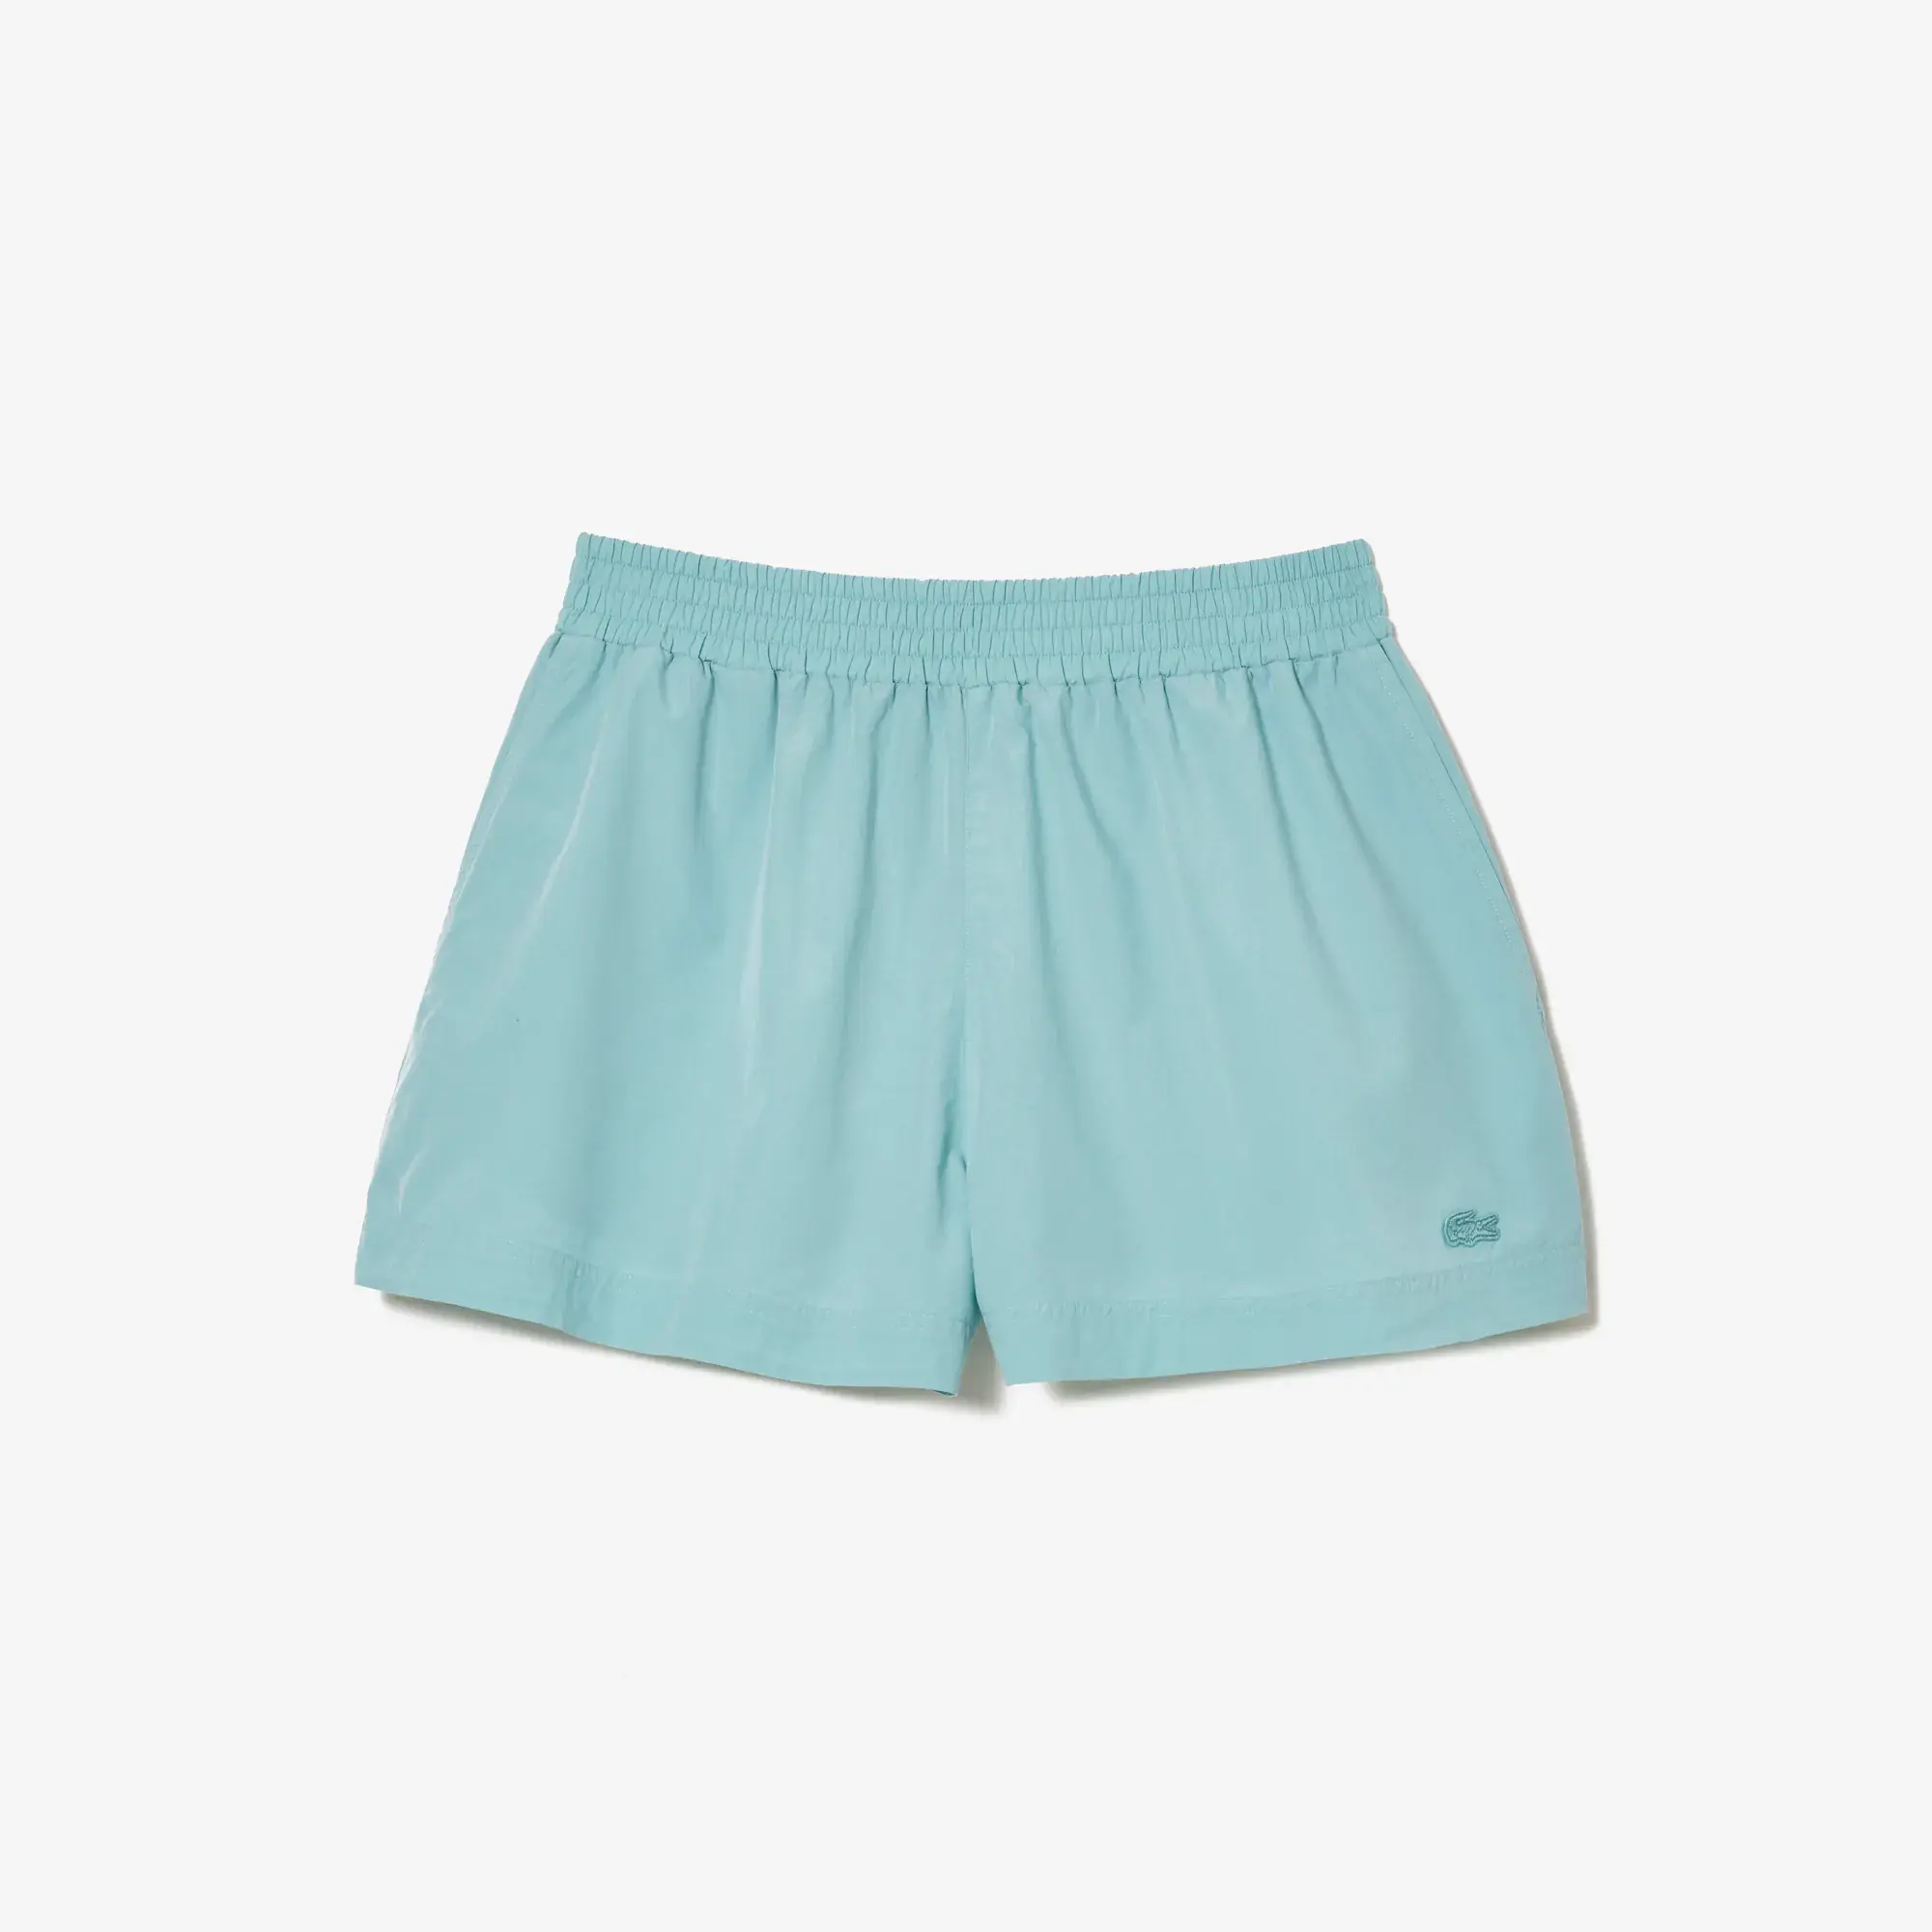 Lacoste Women’s Cotton Poplin Shorts. 2